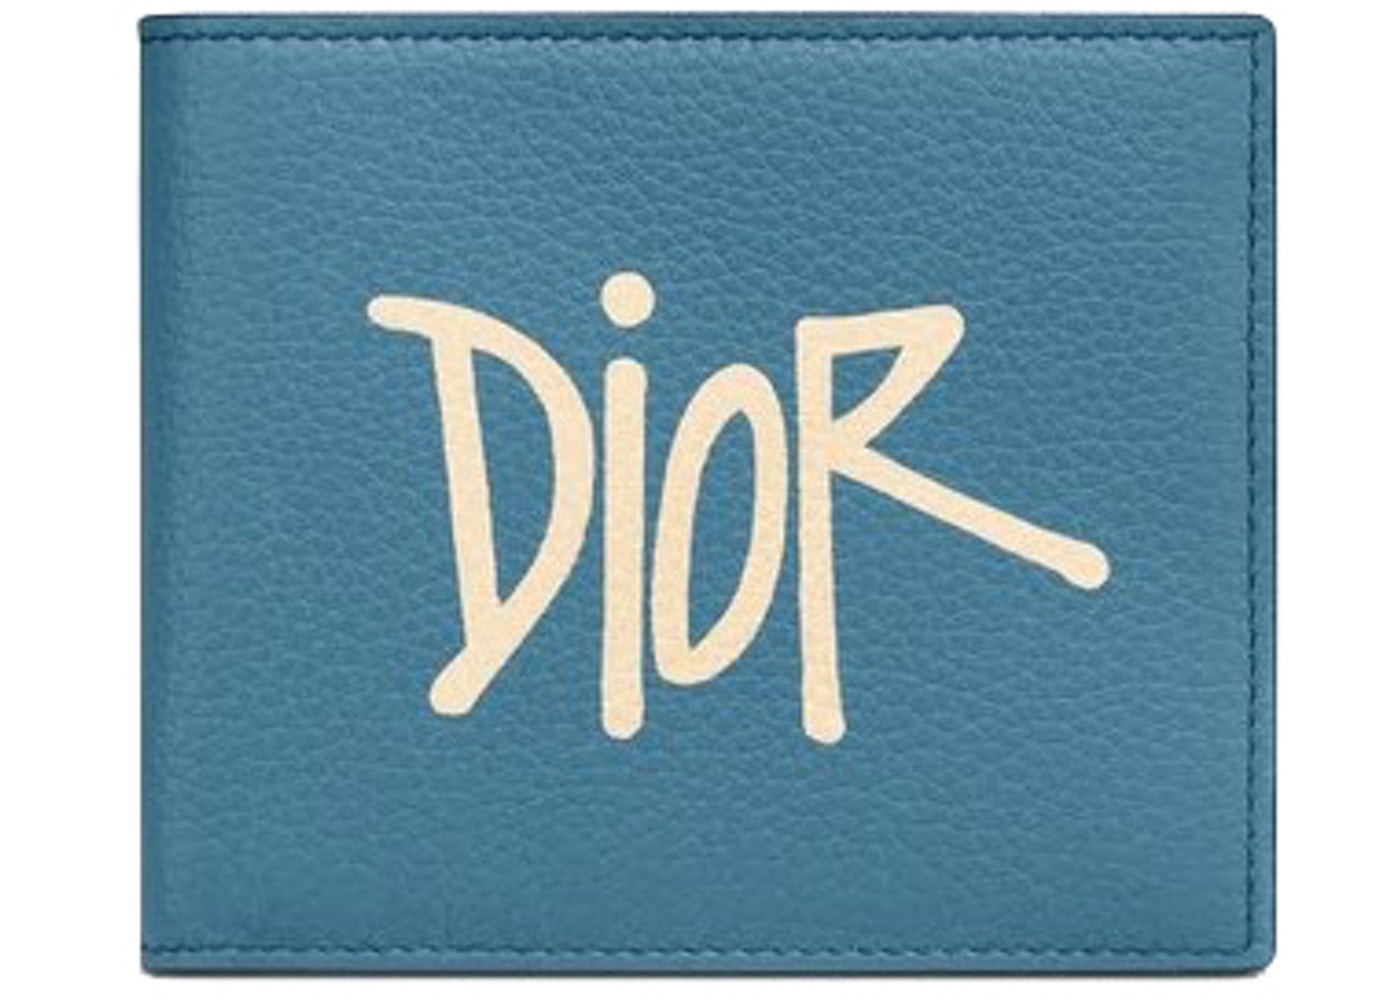 Dior x Shawn Stussy Coin Card Case ”Blueメンズ